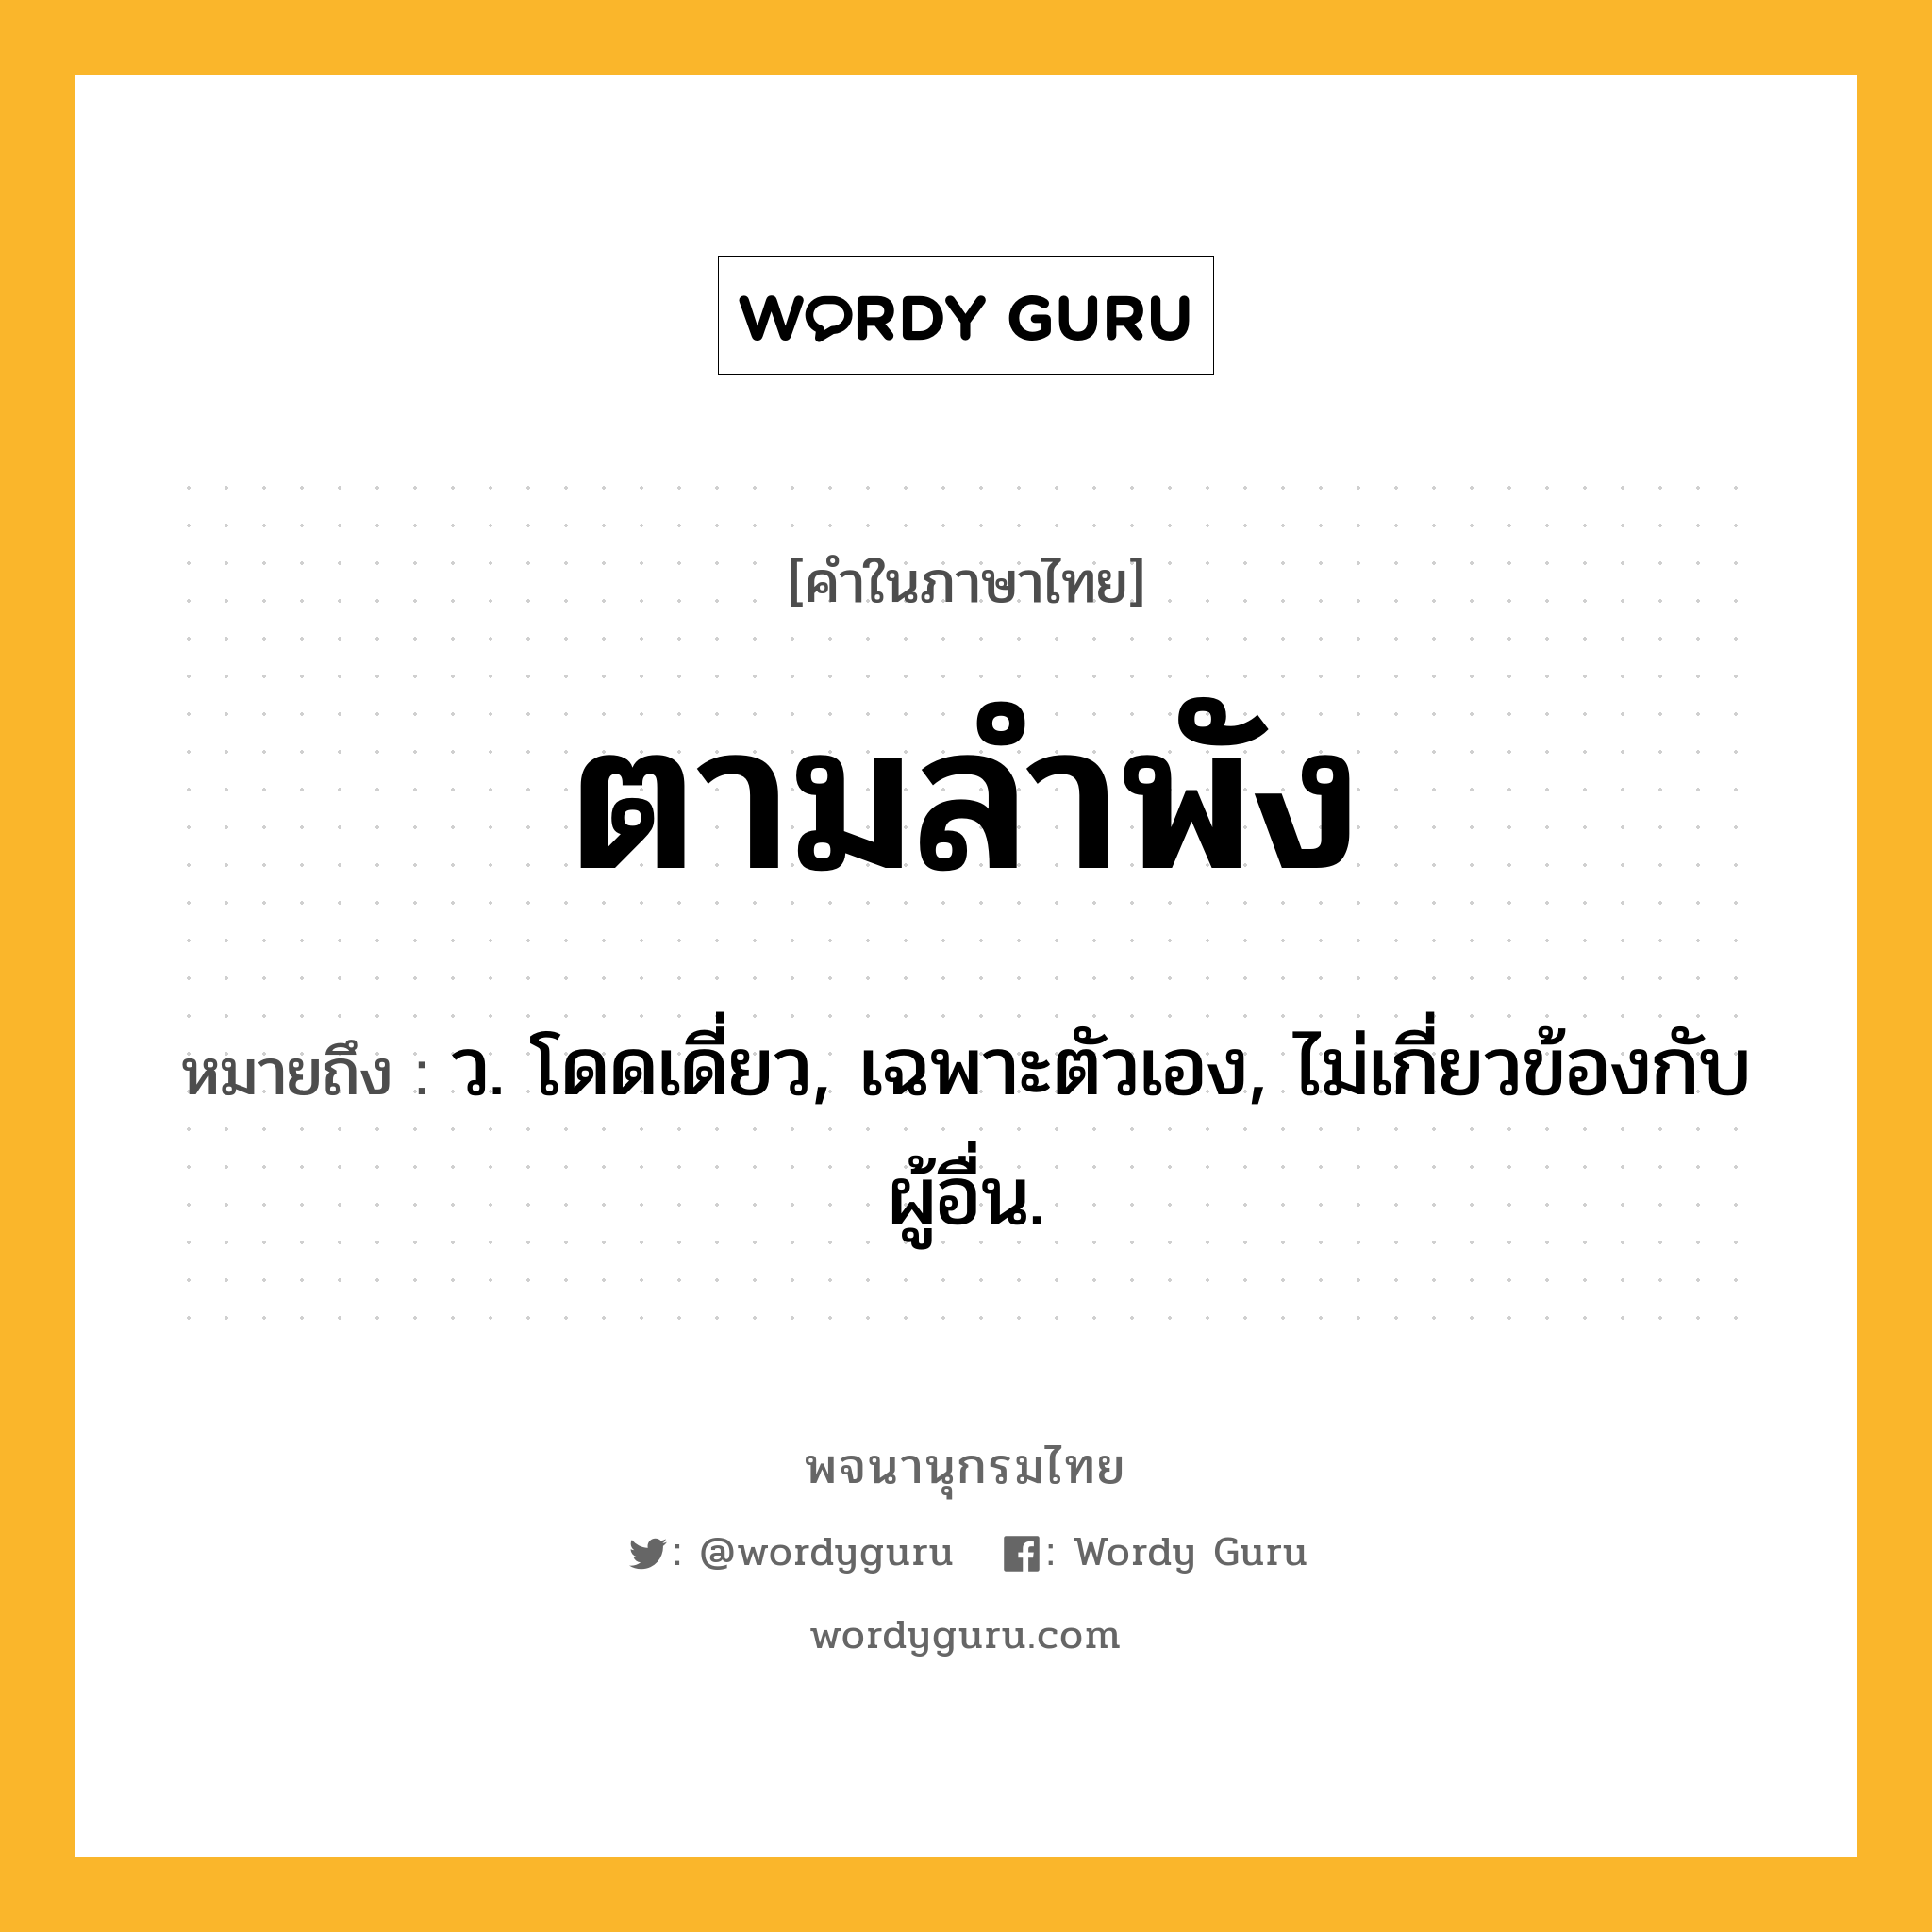 ตามลำพัง ความหมาย หมายถึงอะไร?, คำในภาษาไทย ตามลำพัง หมายถึง ว. โดดเดี่ยว, เฉพาะตัวเอง, ไม่เกี่ยวข้องกับผู้อื่น.